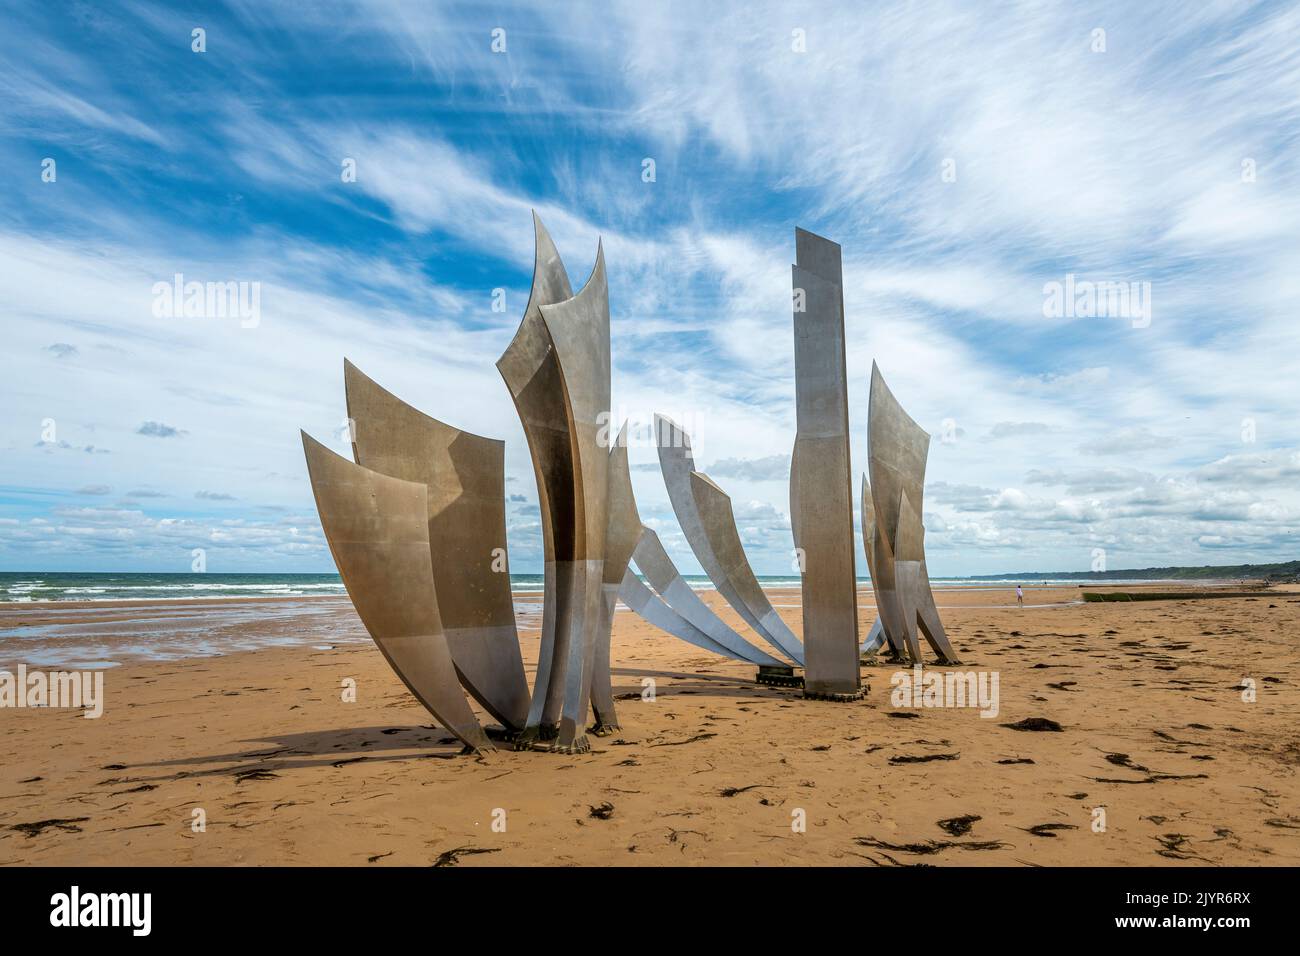 Monumento Les Braves de Saint-Laurent-sur-Mer. Erigido en la arena de la playa de Omaha, en homenaje a los 35.000 soldados aliados que desembarcaron allí el 6 de junio de 1944, y a las 3.000 víctimas, muertas, desaparecidas y heridas en la tarde del Día D, el monumento 'Les Braves', obra del escultor Anilore Banon, Cuyas velas de acero están al pie de los escalones del monumento de la Señal en Saint-Laurent-sur-Mer, fue inaugurado el 5 de junio de 2004, en la víspera del 60th aniversario de los desembarques de Normandía. Calvados, Normandía, Francia Foto de stock